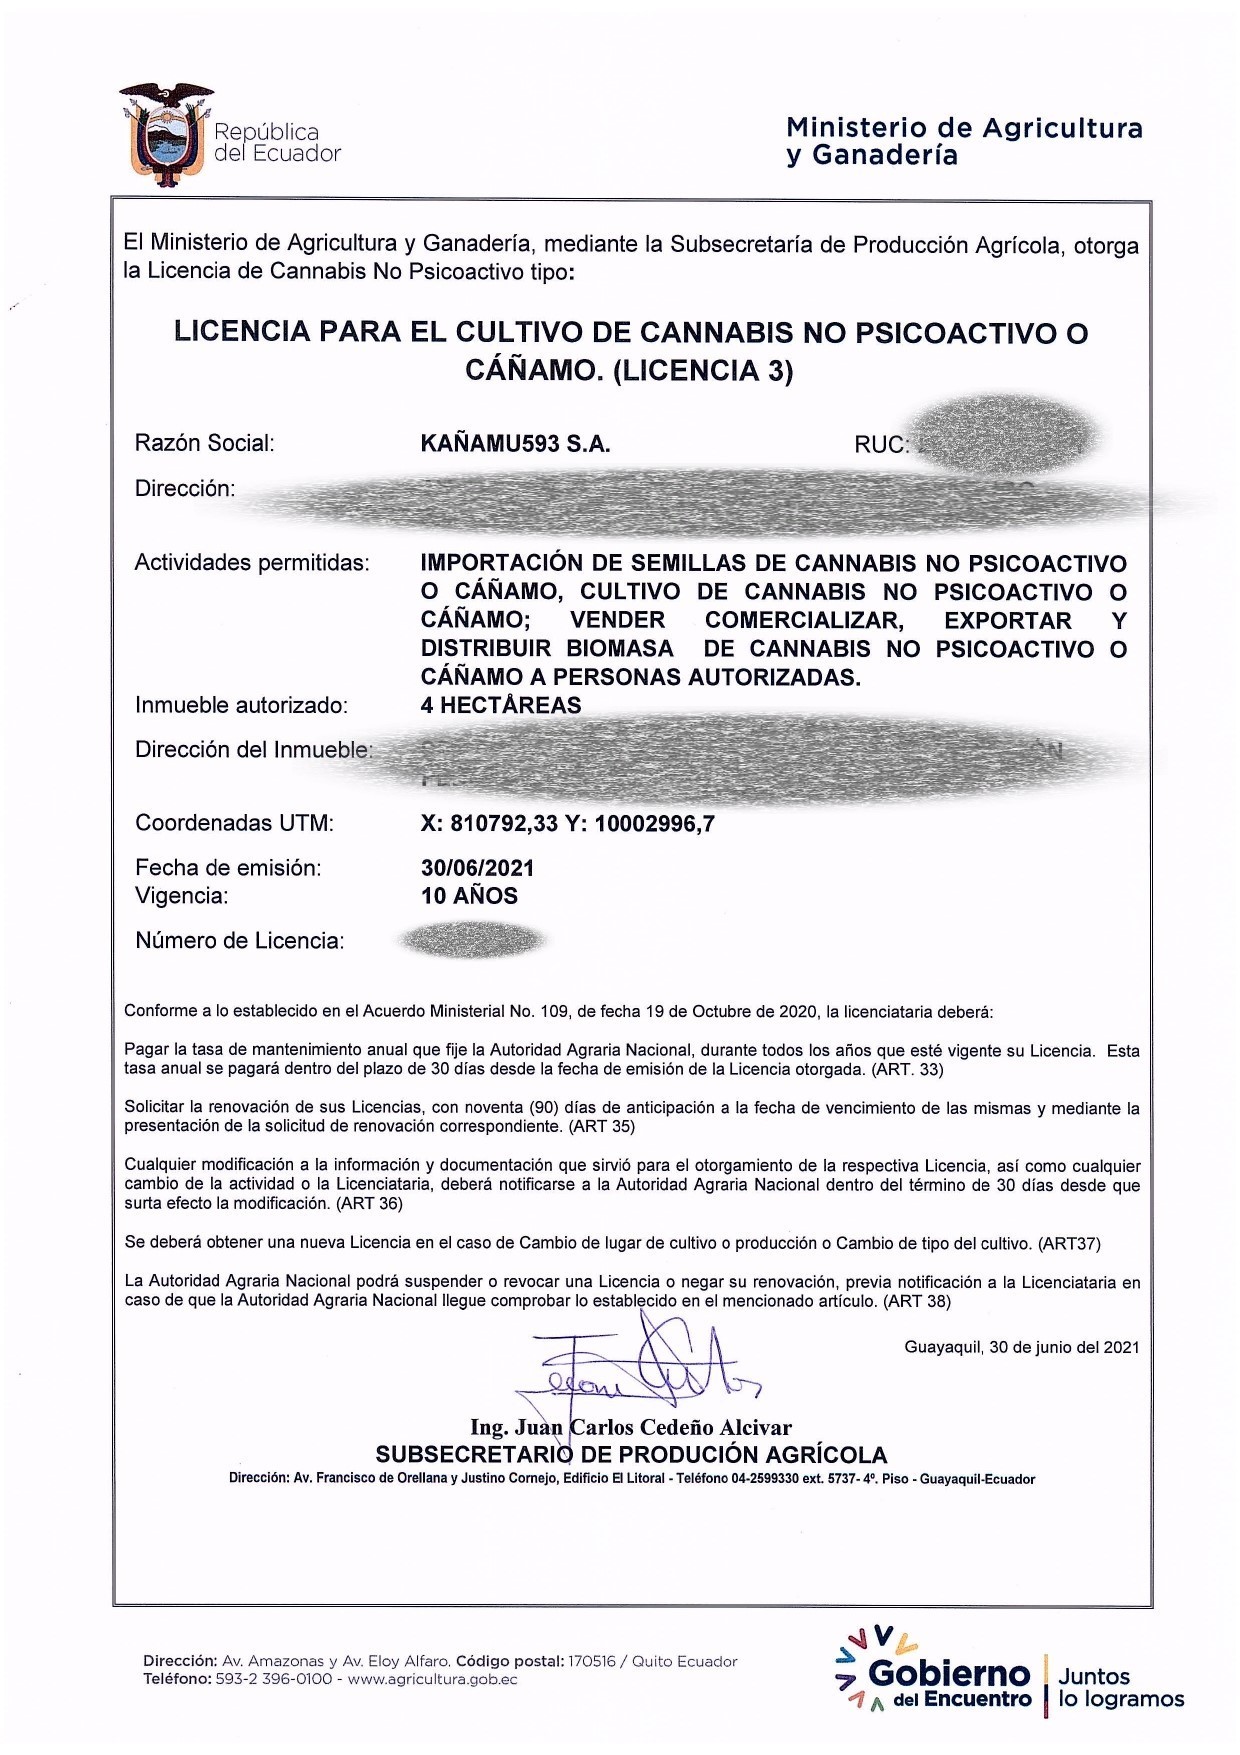 KAÑAMU593  OBTIENE LA LICENCIA 3 PARA EL CULTIVO DE CANNABIS DE USO FARMACÉUTICO